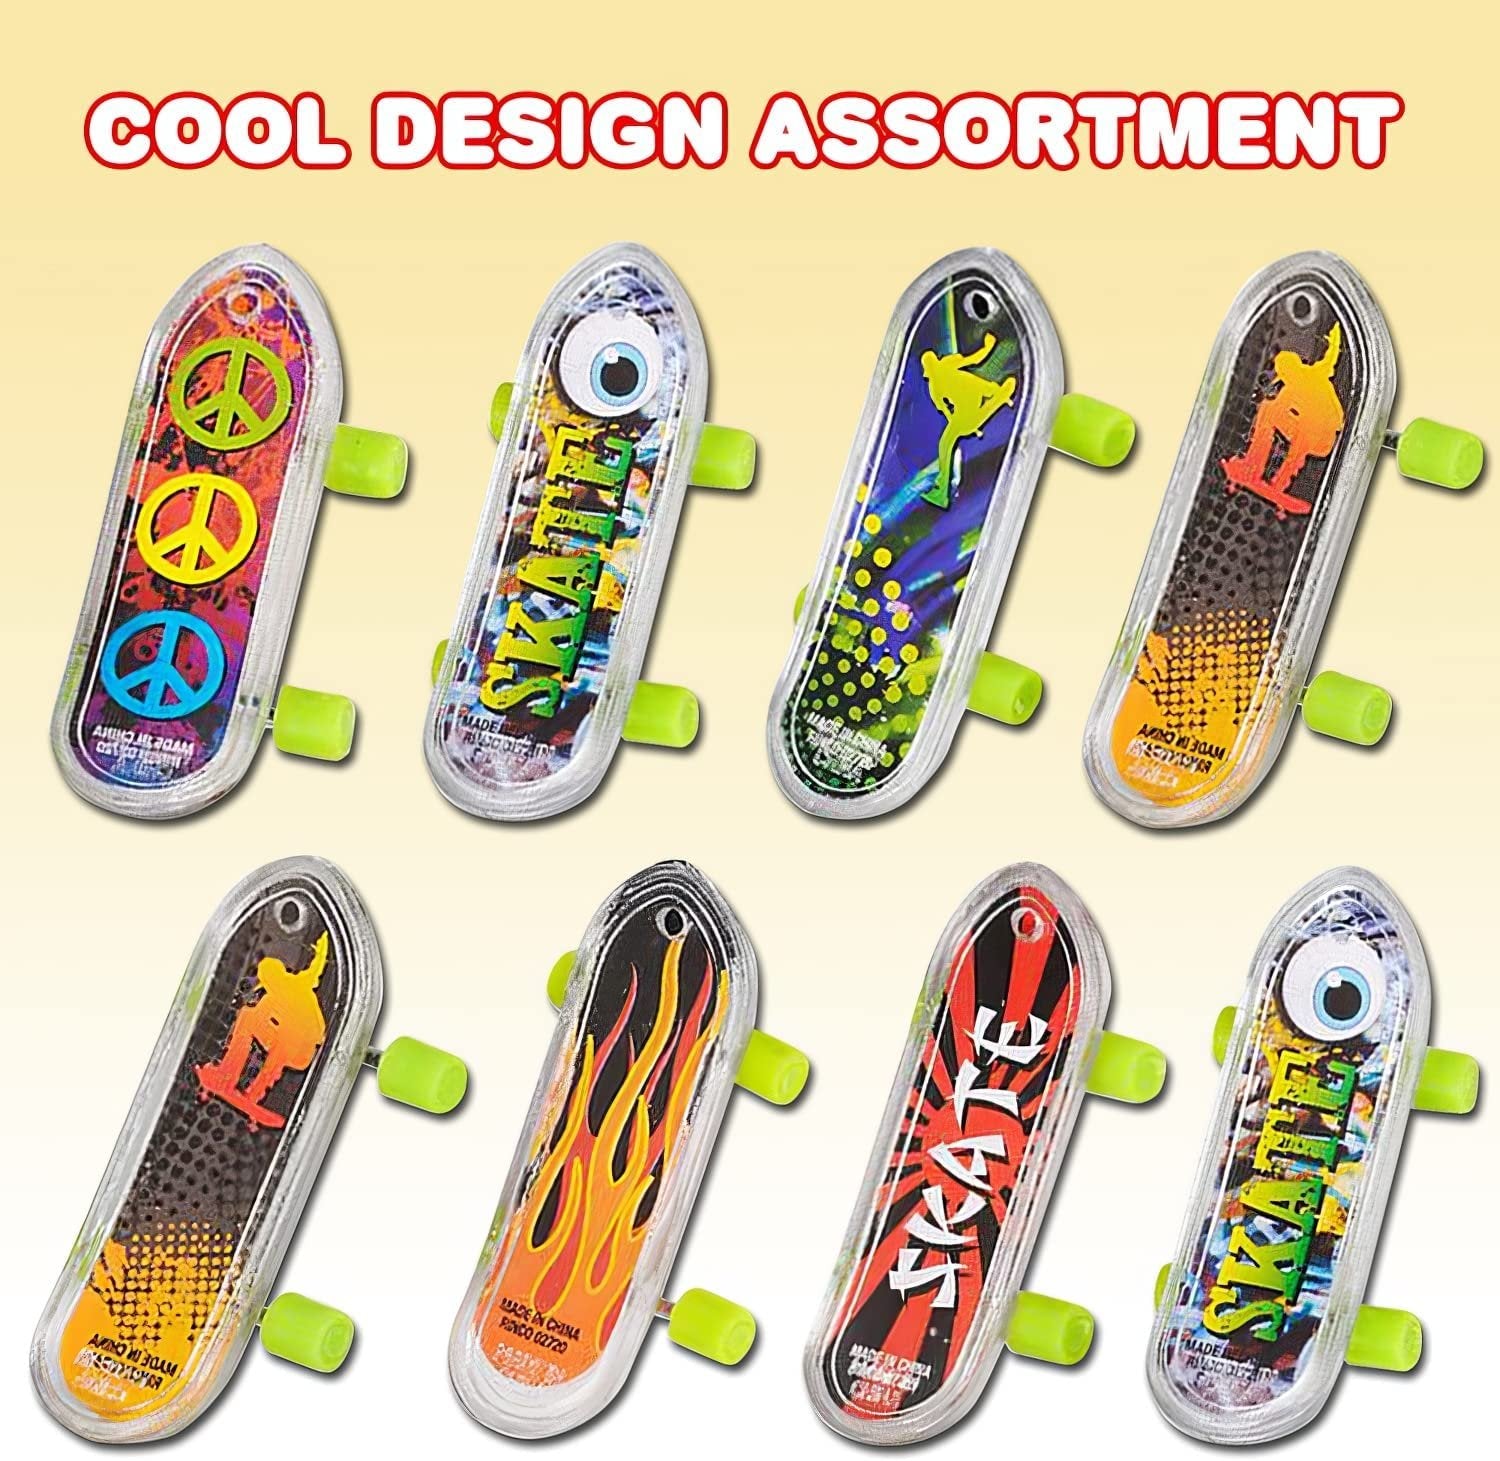 Mini Finger Skateboards for Kids, Bulk Pack of 144, Durable Finger Boa ·  Art Creativity